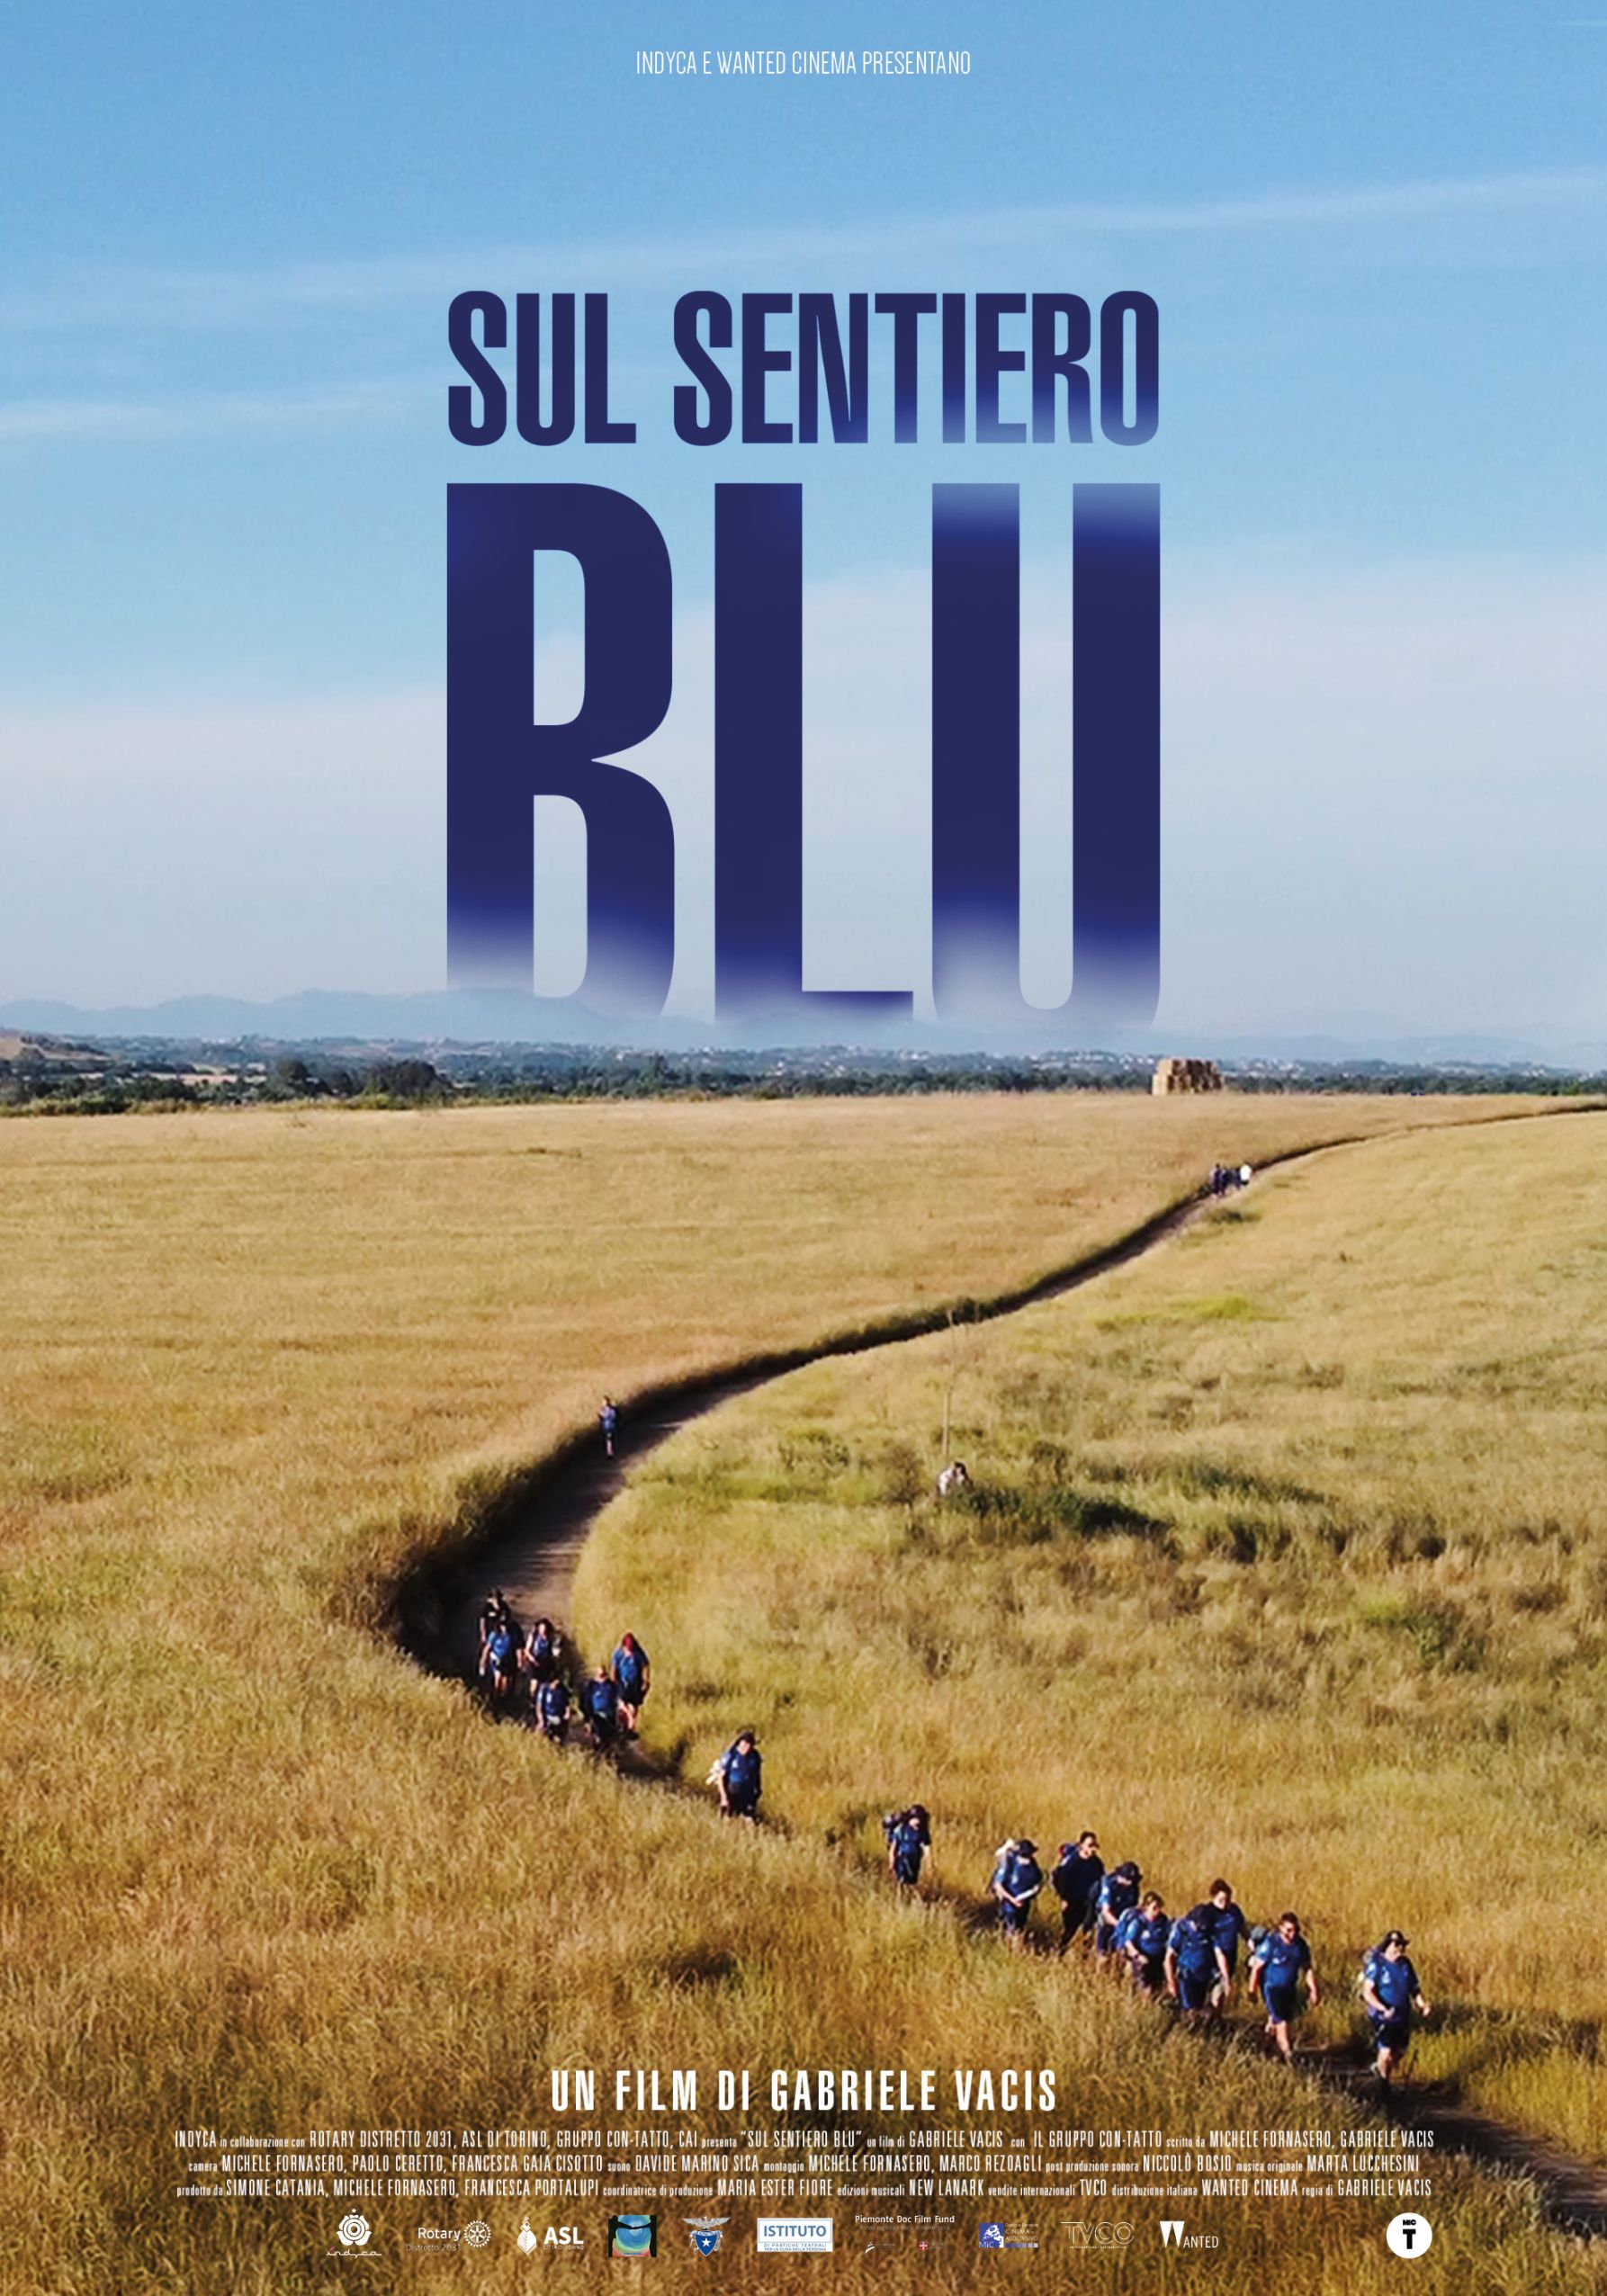 Da lunedì 28 febbraio arriva al cinema "SUL SENTIERO BLU", un emozionante documentario sul viaggio di un gruppo di giovani autistici sull’antica via Francigena fino a Roma (Wanted Cinema).